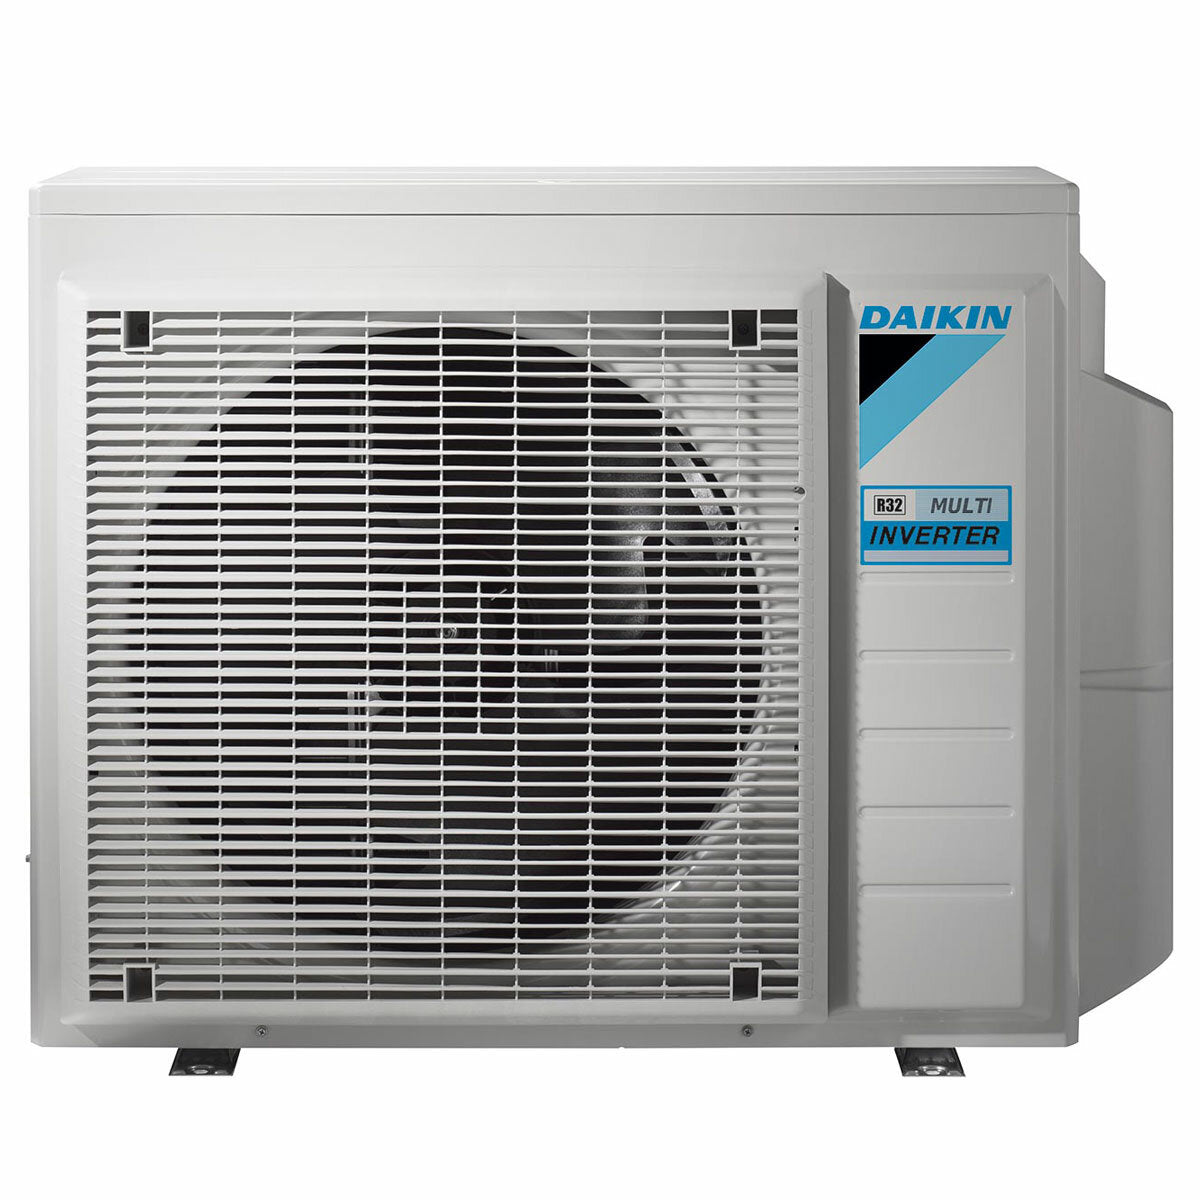 Daikin Emura 3 air conditioner penta split 9000+9000+9000+9000+9000 BTU inverter A+ wifi outdoor unit 7.8 kW White